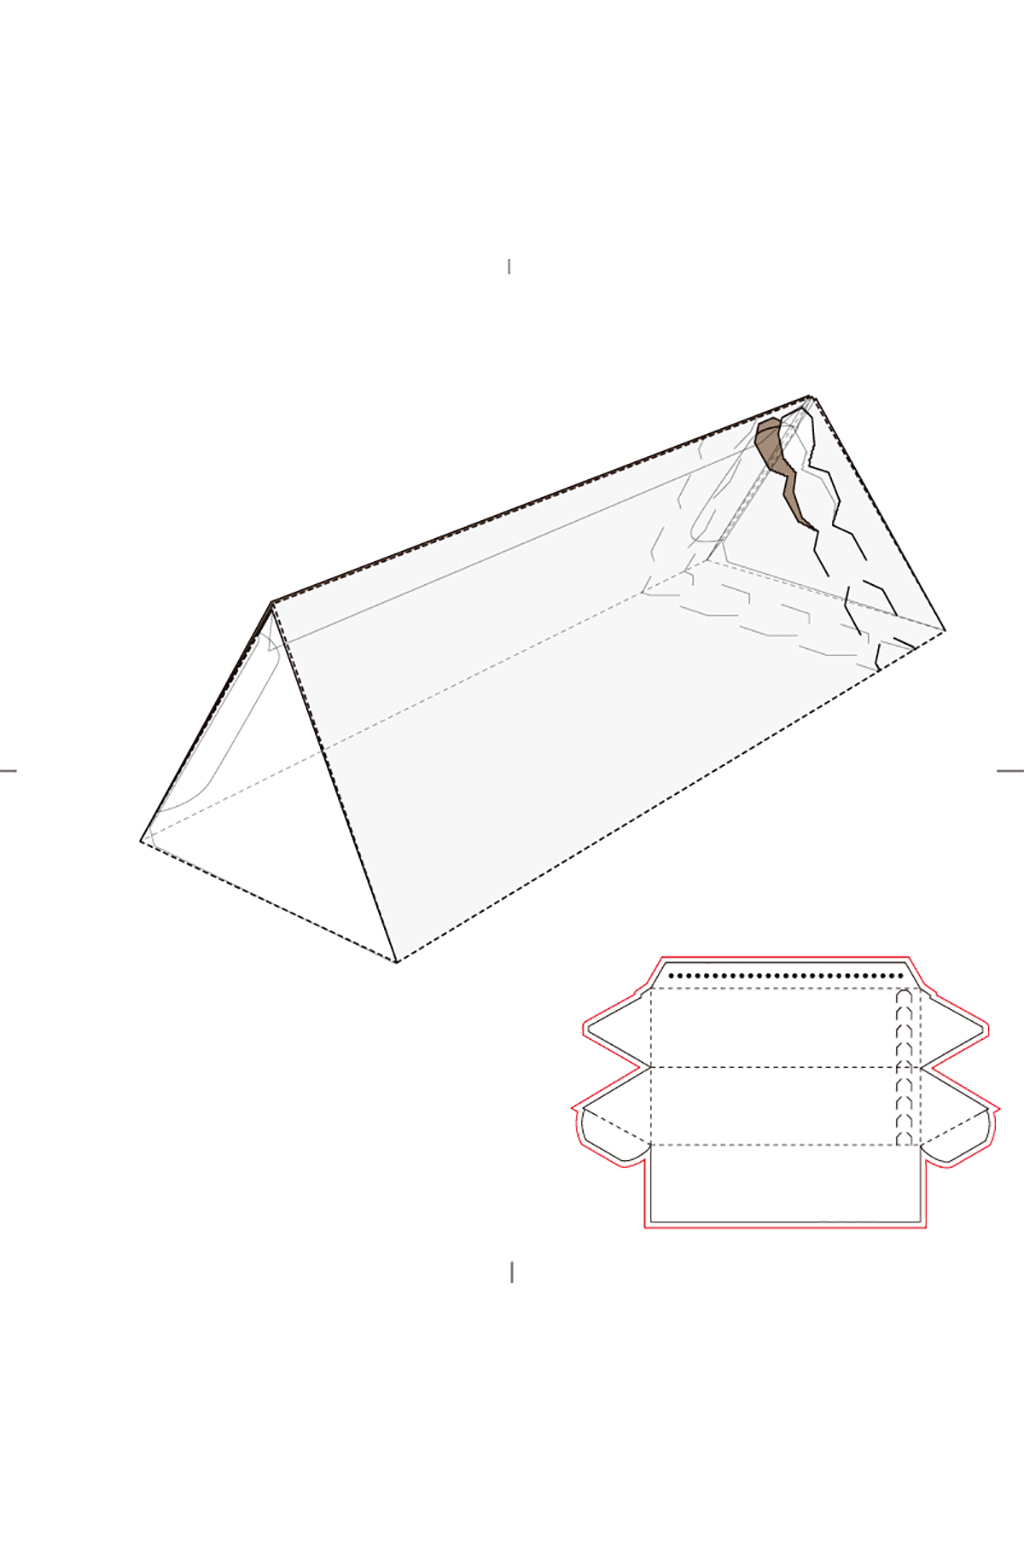 三角形盒子刀版图图片